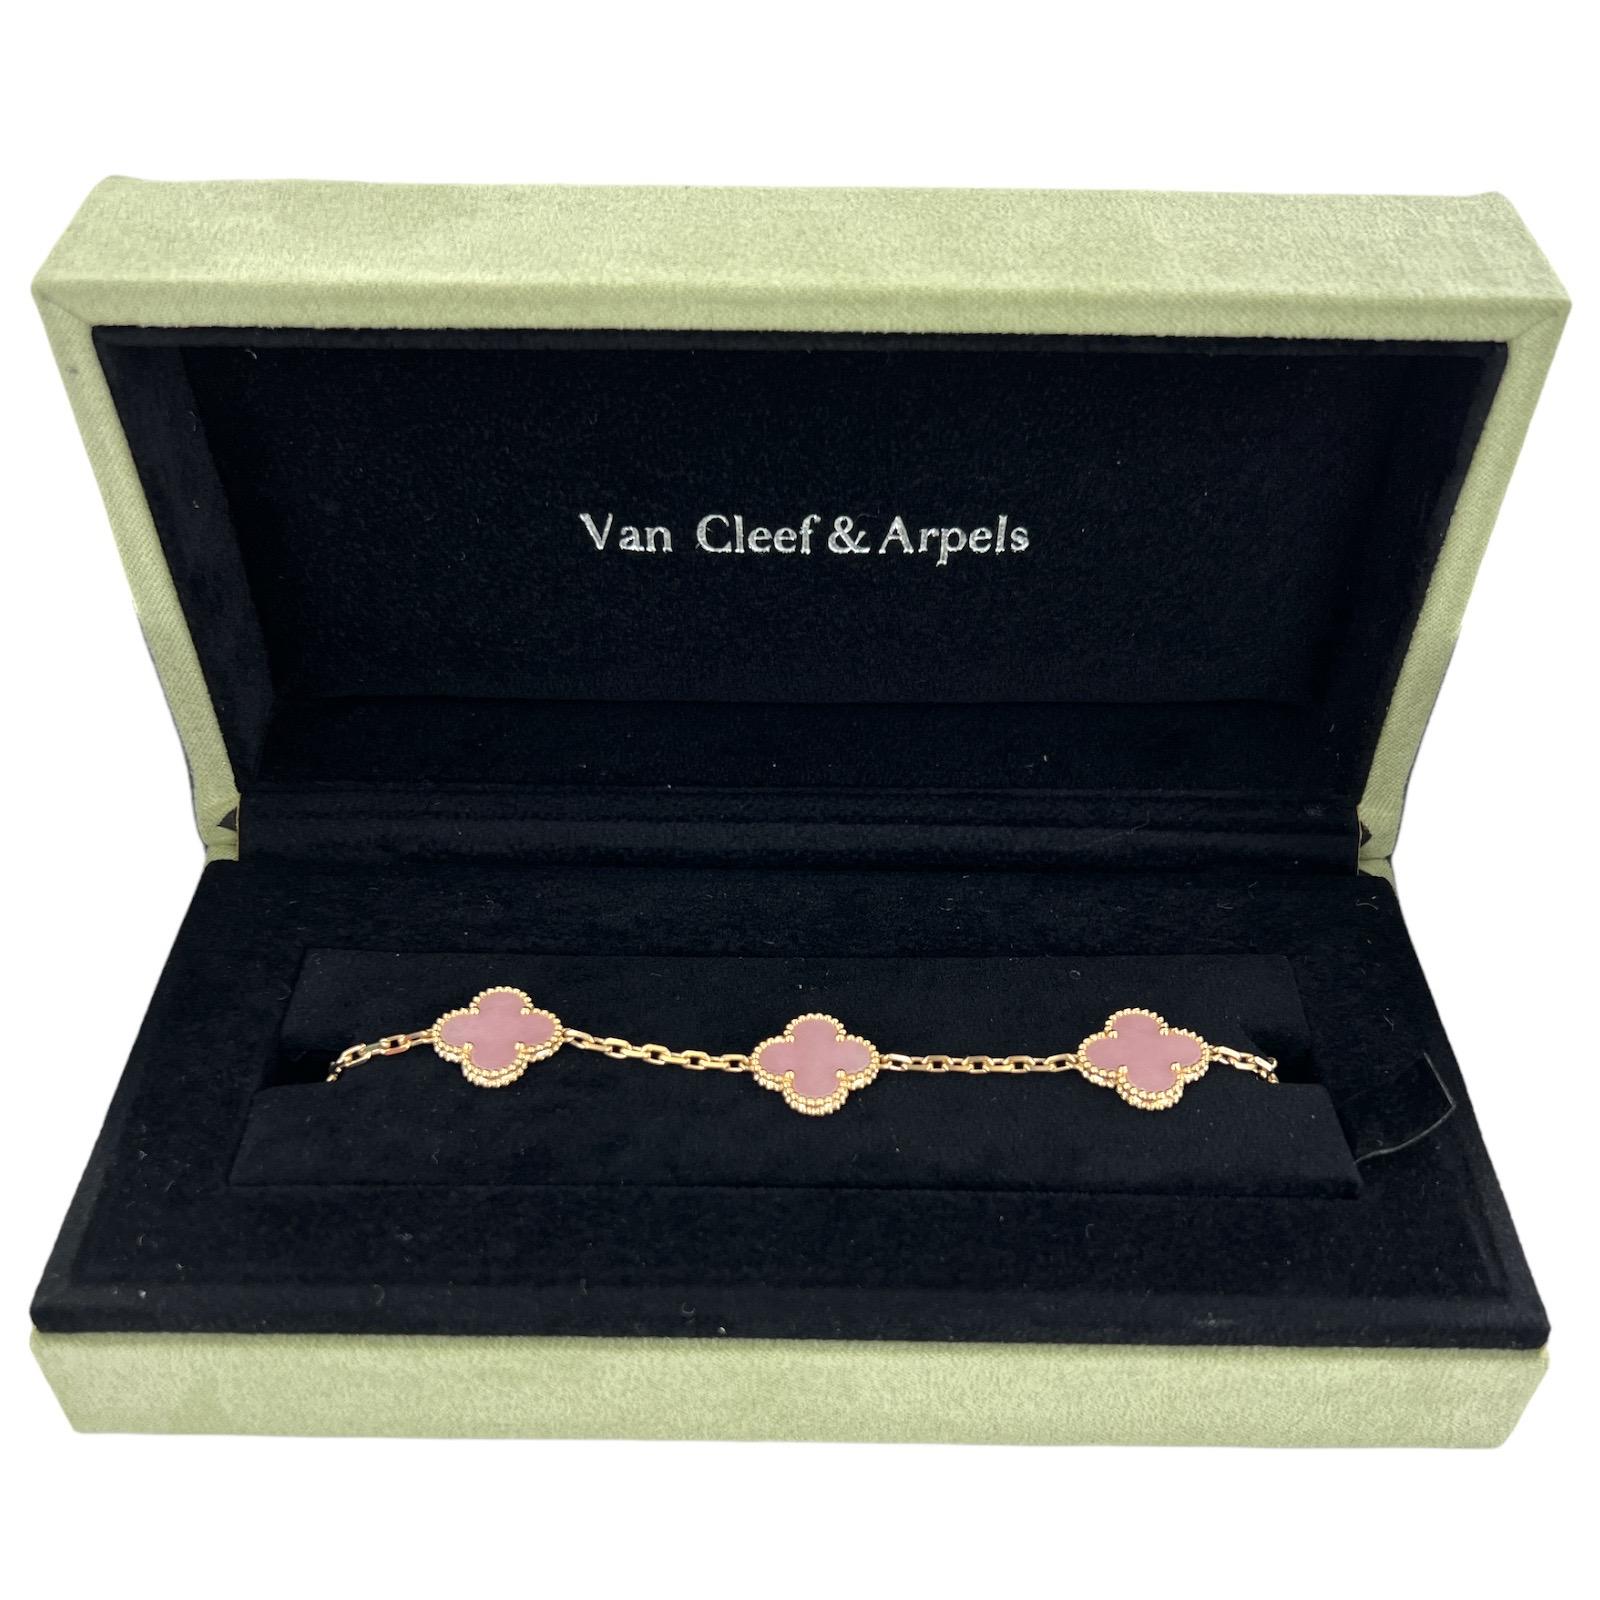 Van Cleef & Arpels Vintage Alhambra Pink Opal Armband aus 18 Karat Gelbgold. Dieses seltene Sammlerstück ist aus der Sammlung ausgeschieden. Das Armband mit 5 Motiven ist 7 Zoll lang, signiert, nummeriert und gestempelt. Wird in der